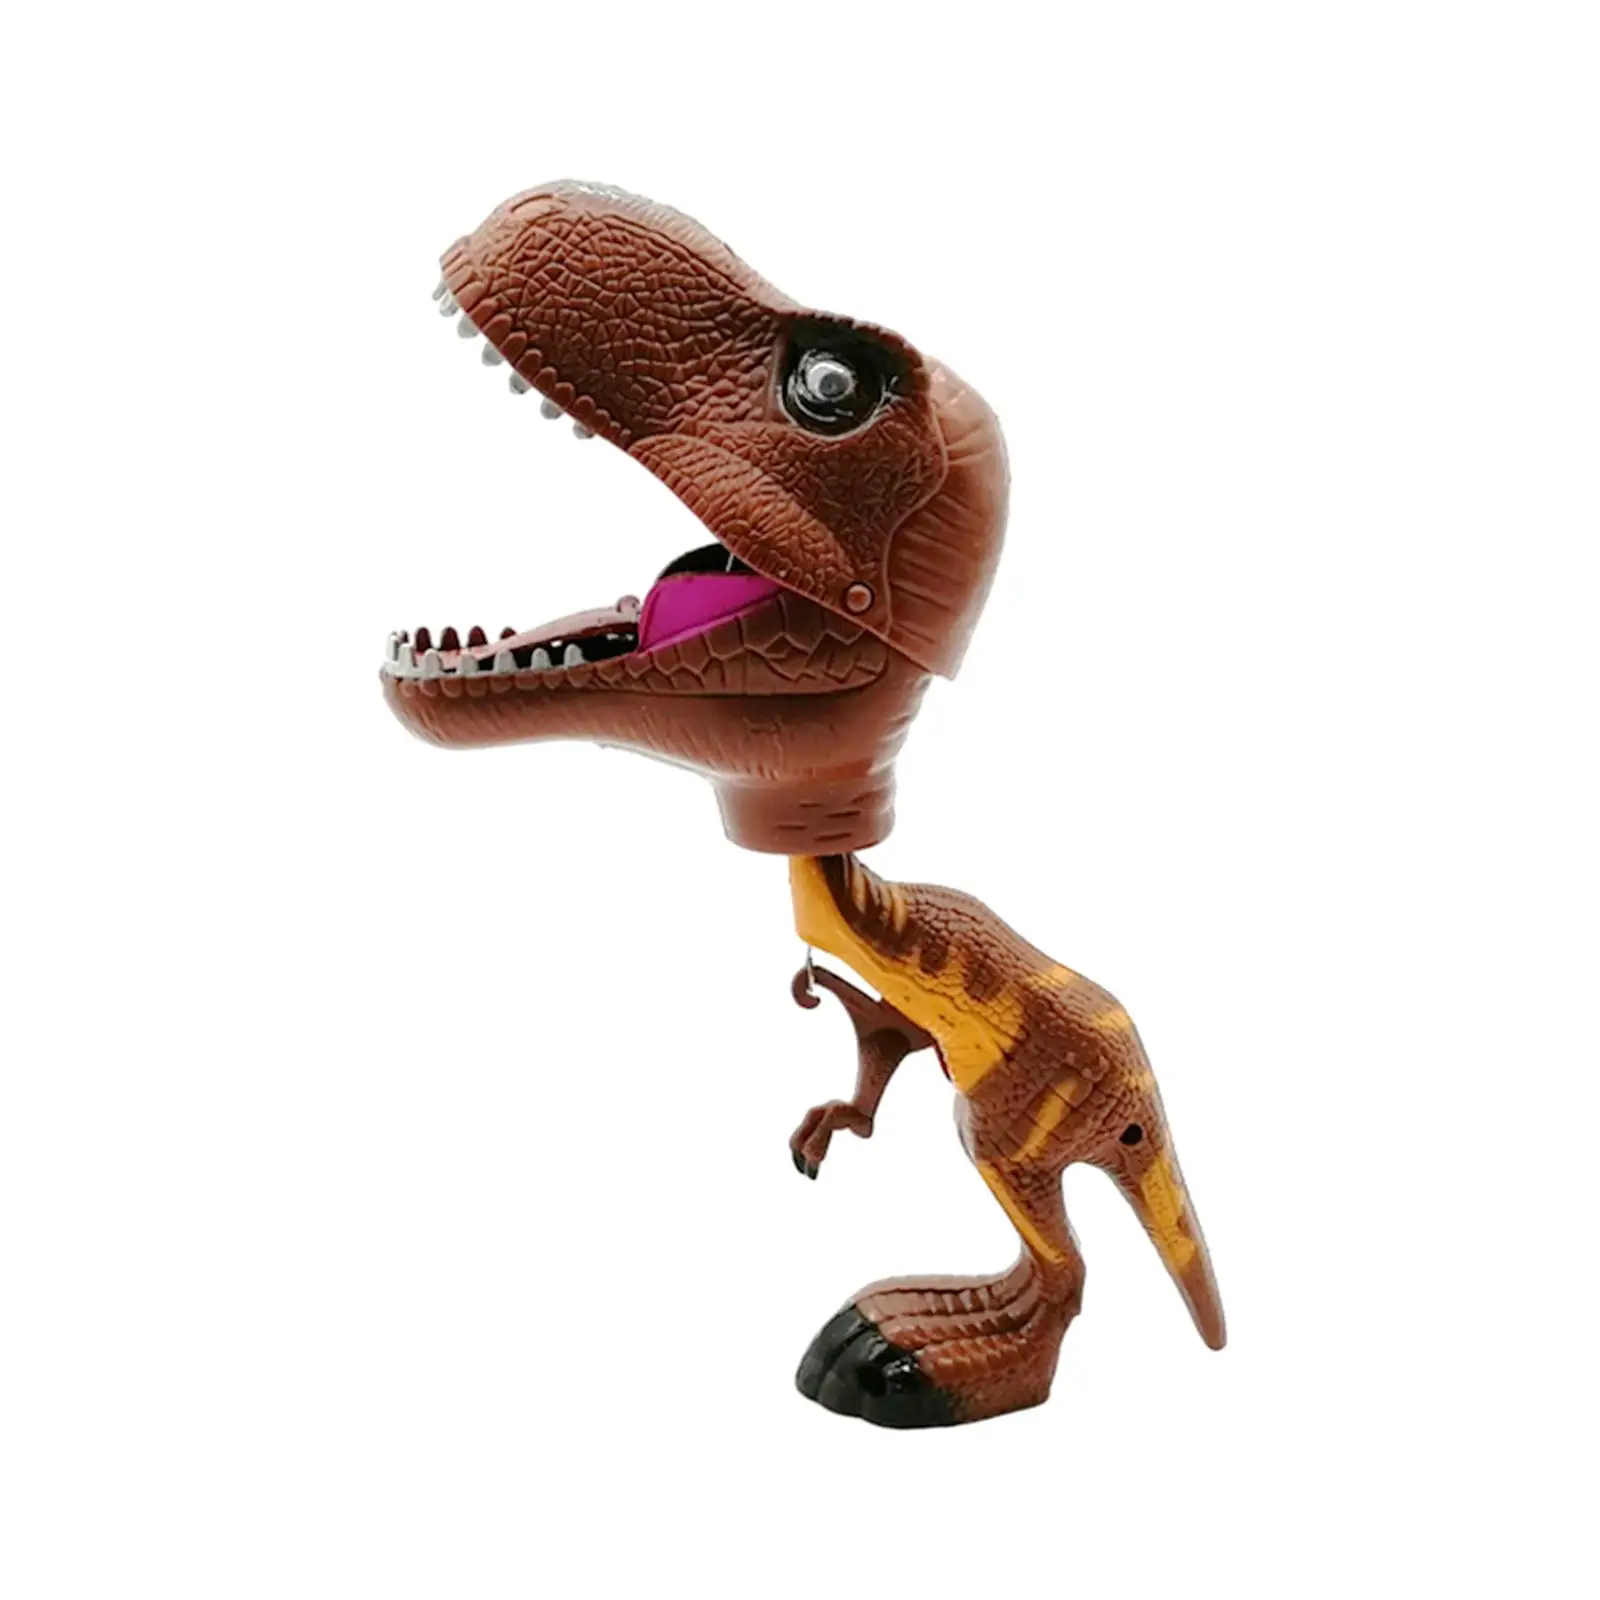 Dinosaur Hand Clamping Doll Dinosaur Animal Figures for Boys Girls Kids Gift